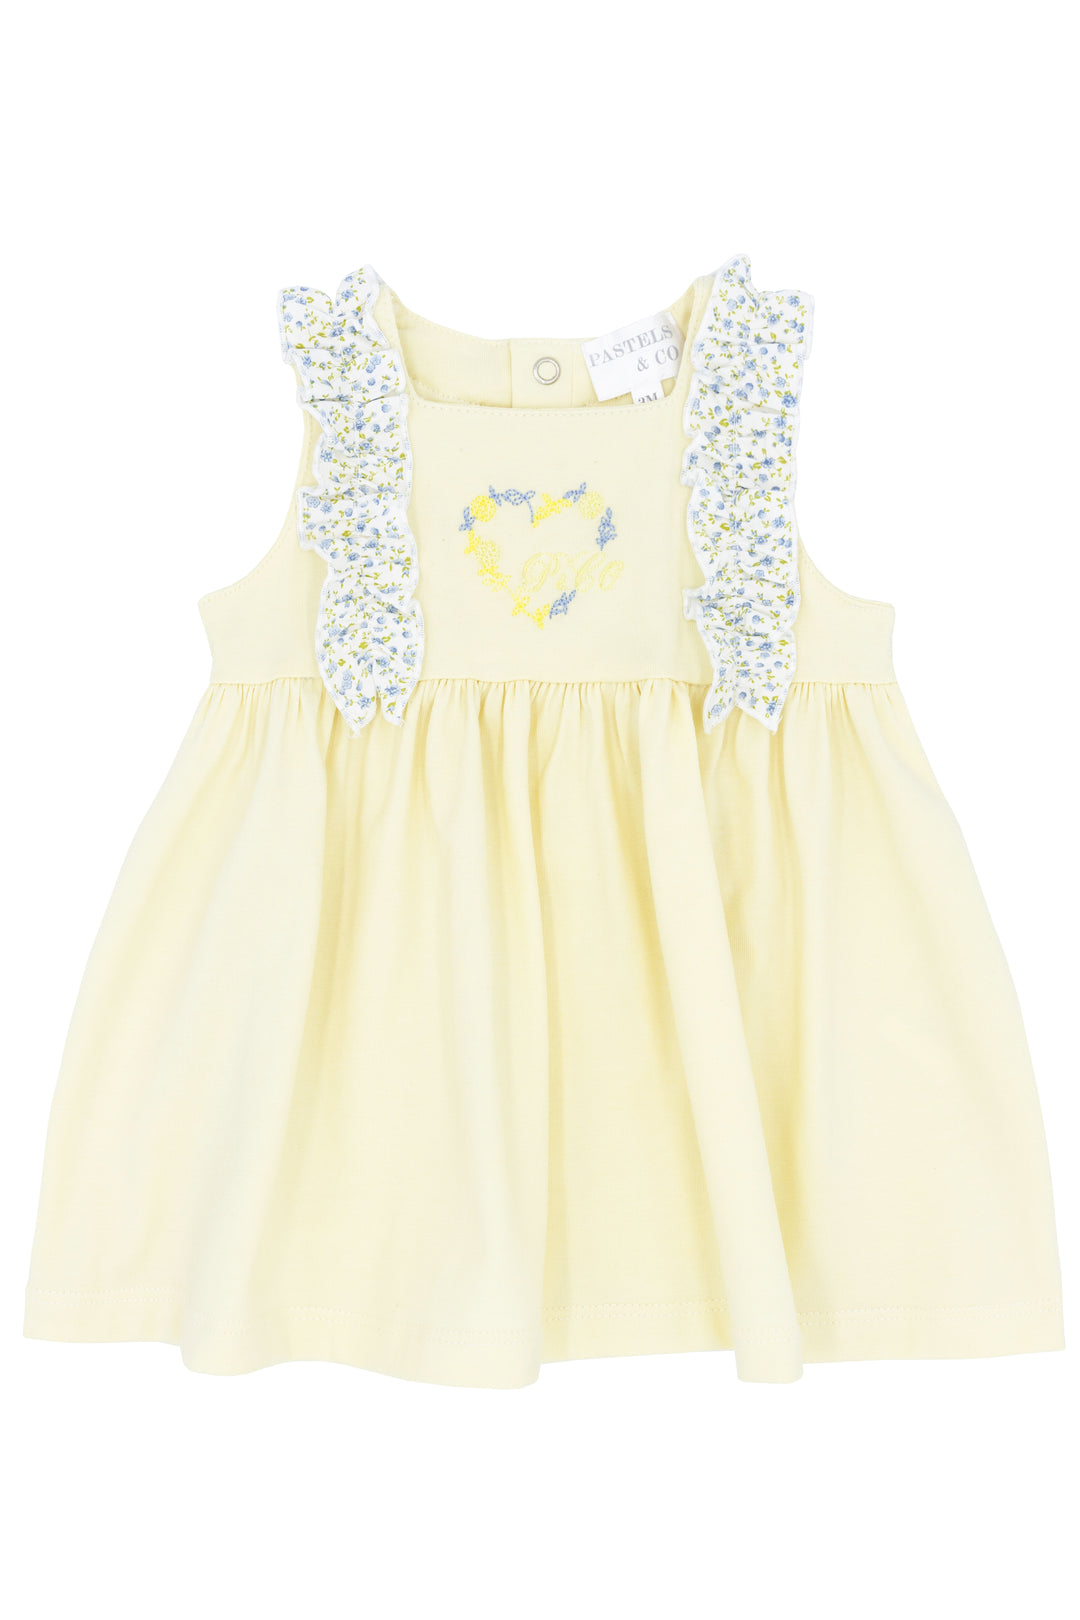 Pastels & Co "Blossom" Lemon & Blue Floral Dress | Millie and John